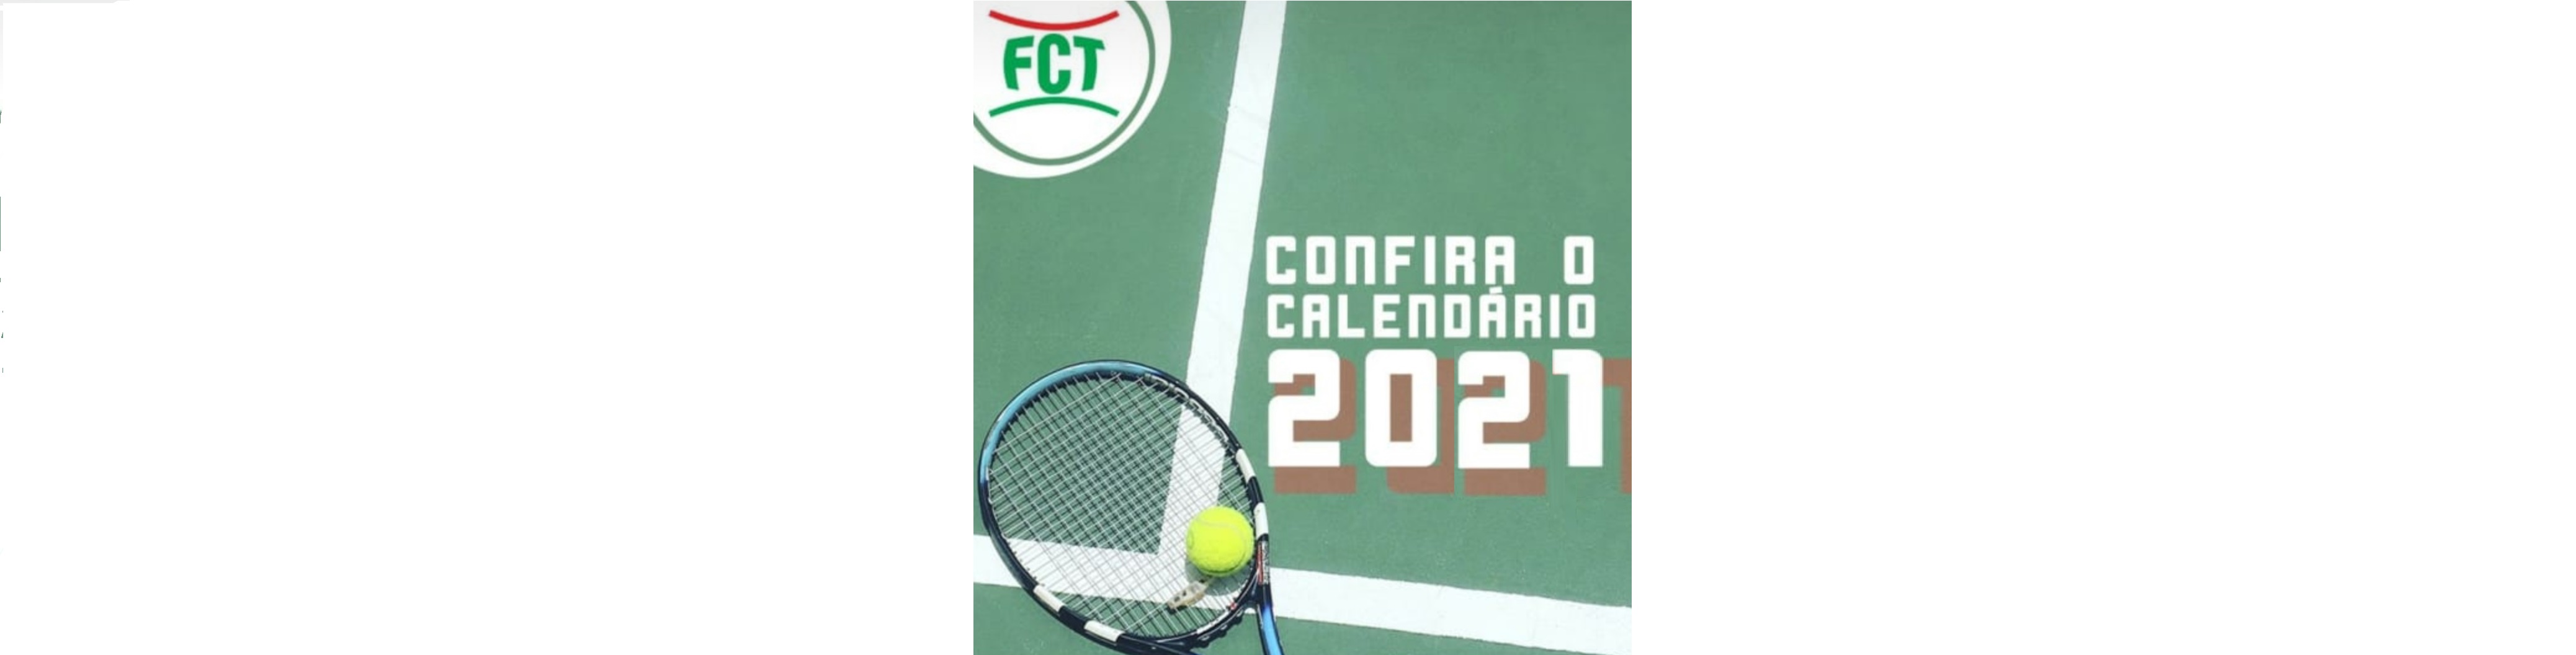 CALENDÁRIO ESPORTIVO FCT 2021 - TÊNIS E BEACH TENNIS